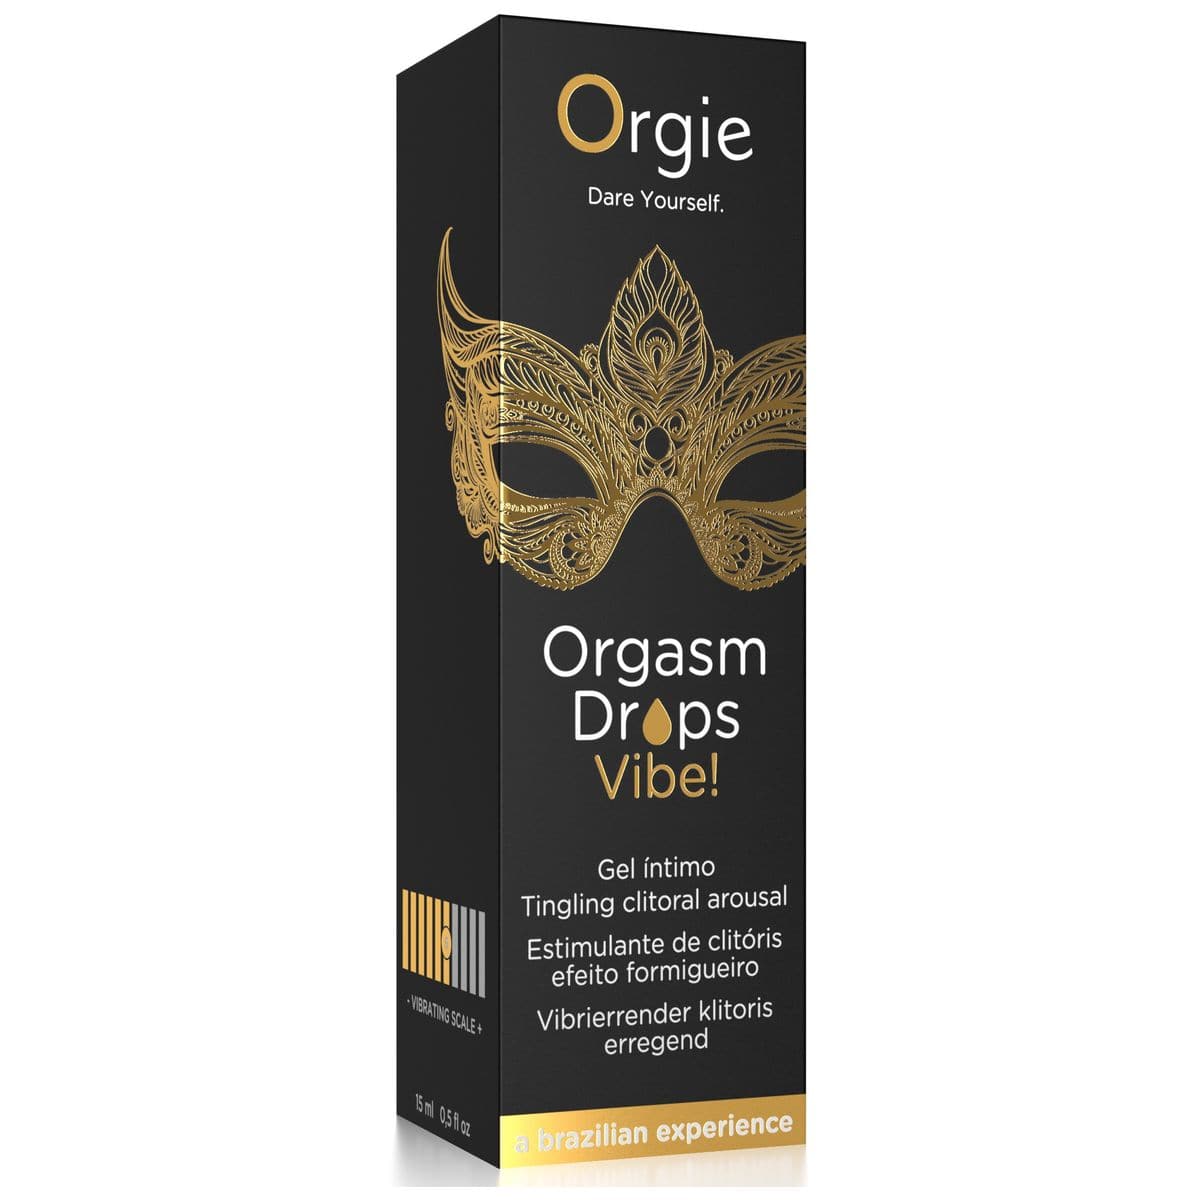 Estimulante Orgasm Drops Vibe 15ml - Efeito Calor, Formigueiro e Vibração